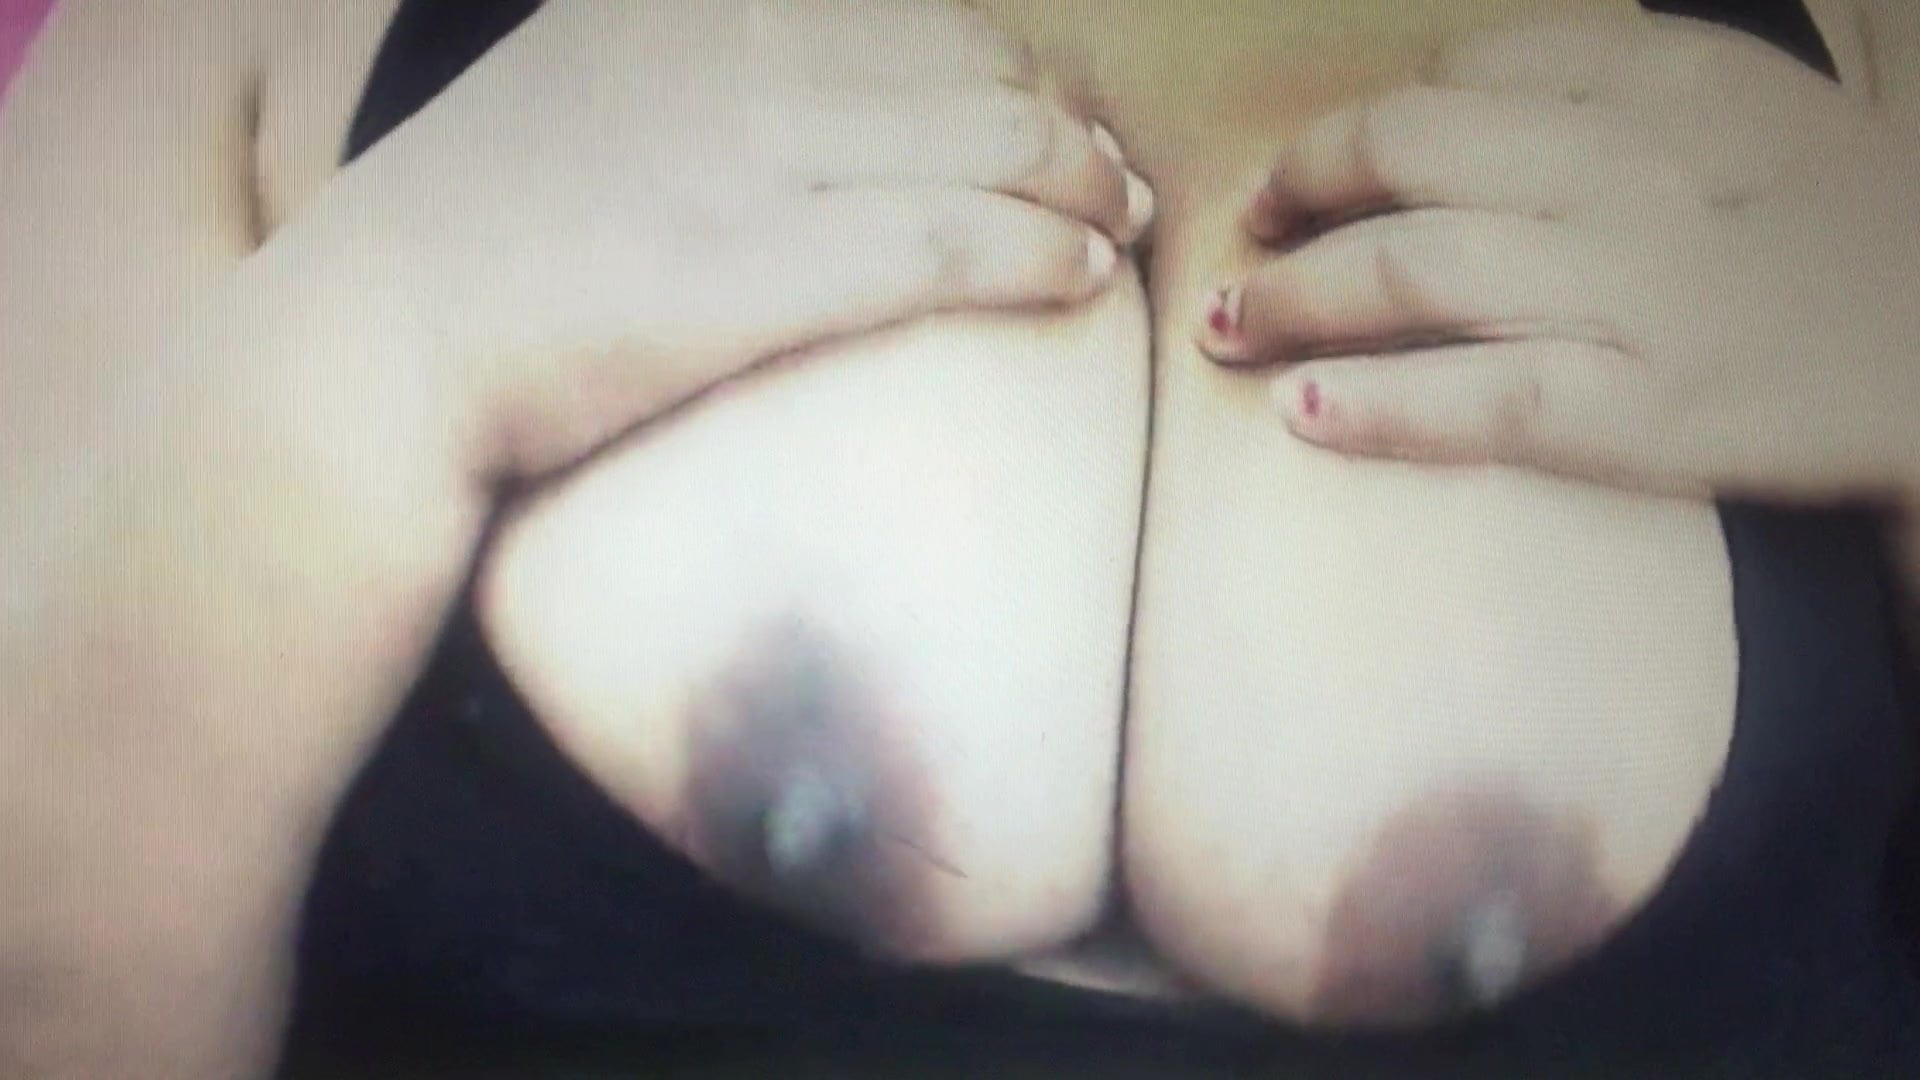 Big Black Breast Xxx - Big black breast XXX - Big black breast Porn Videos | Redvidz.com